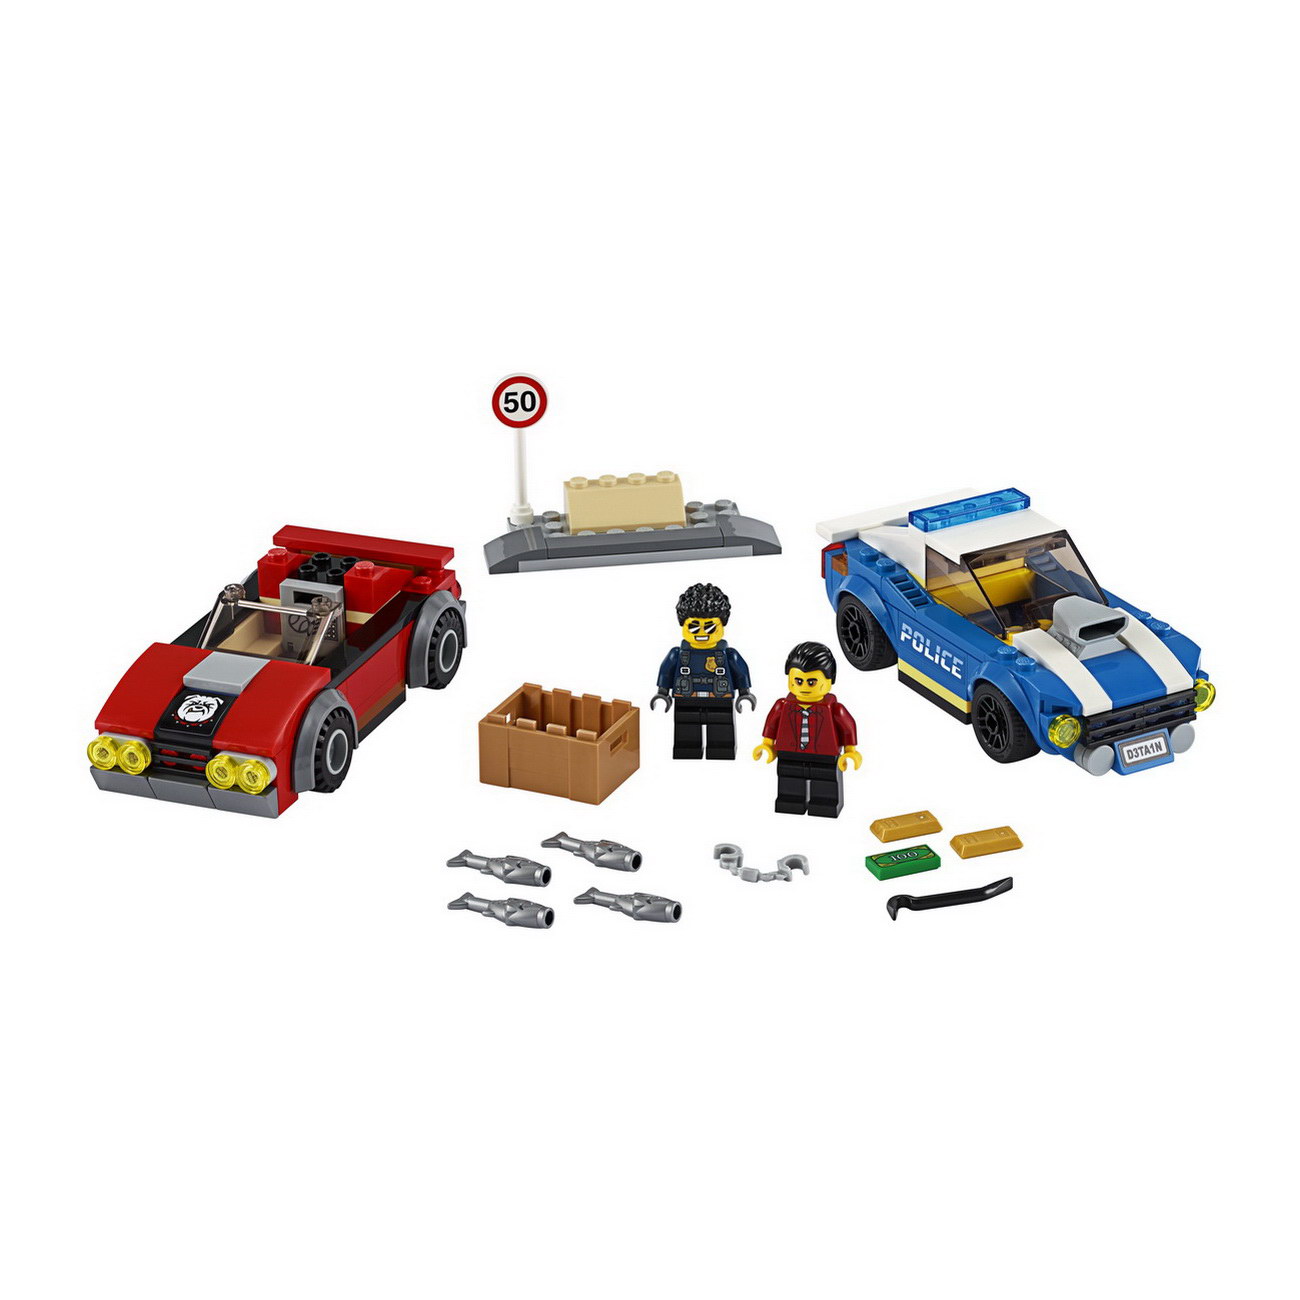 LEGO City - Festnahme auf der Autobahn (60242)